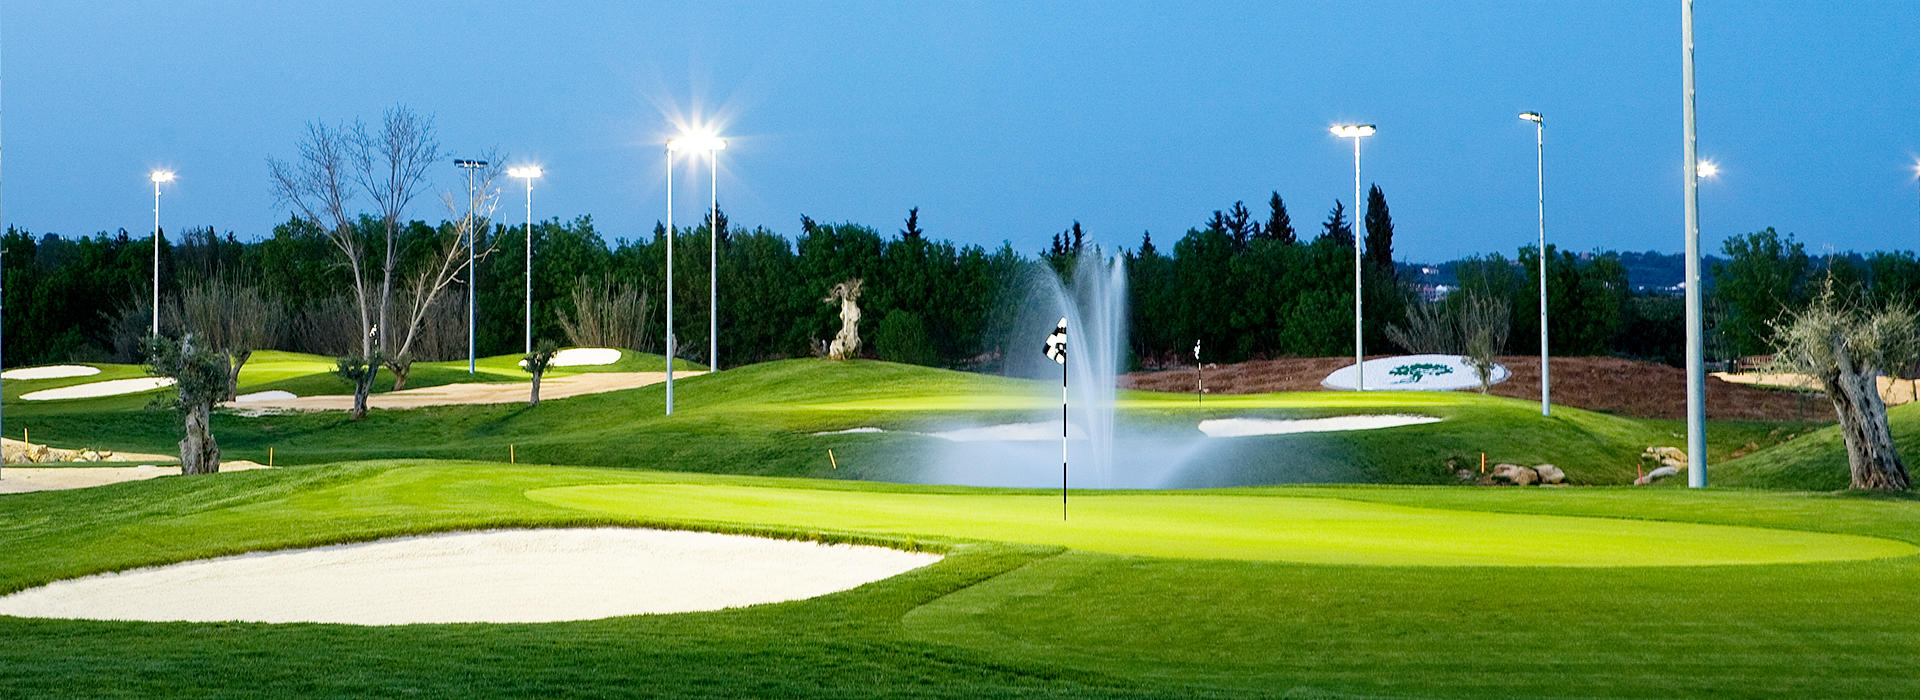 Golf Academy à noite